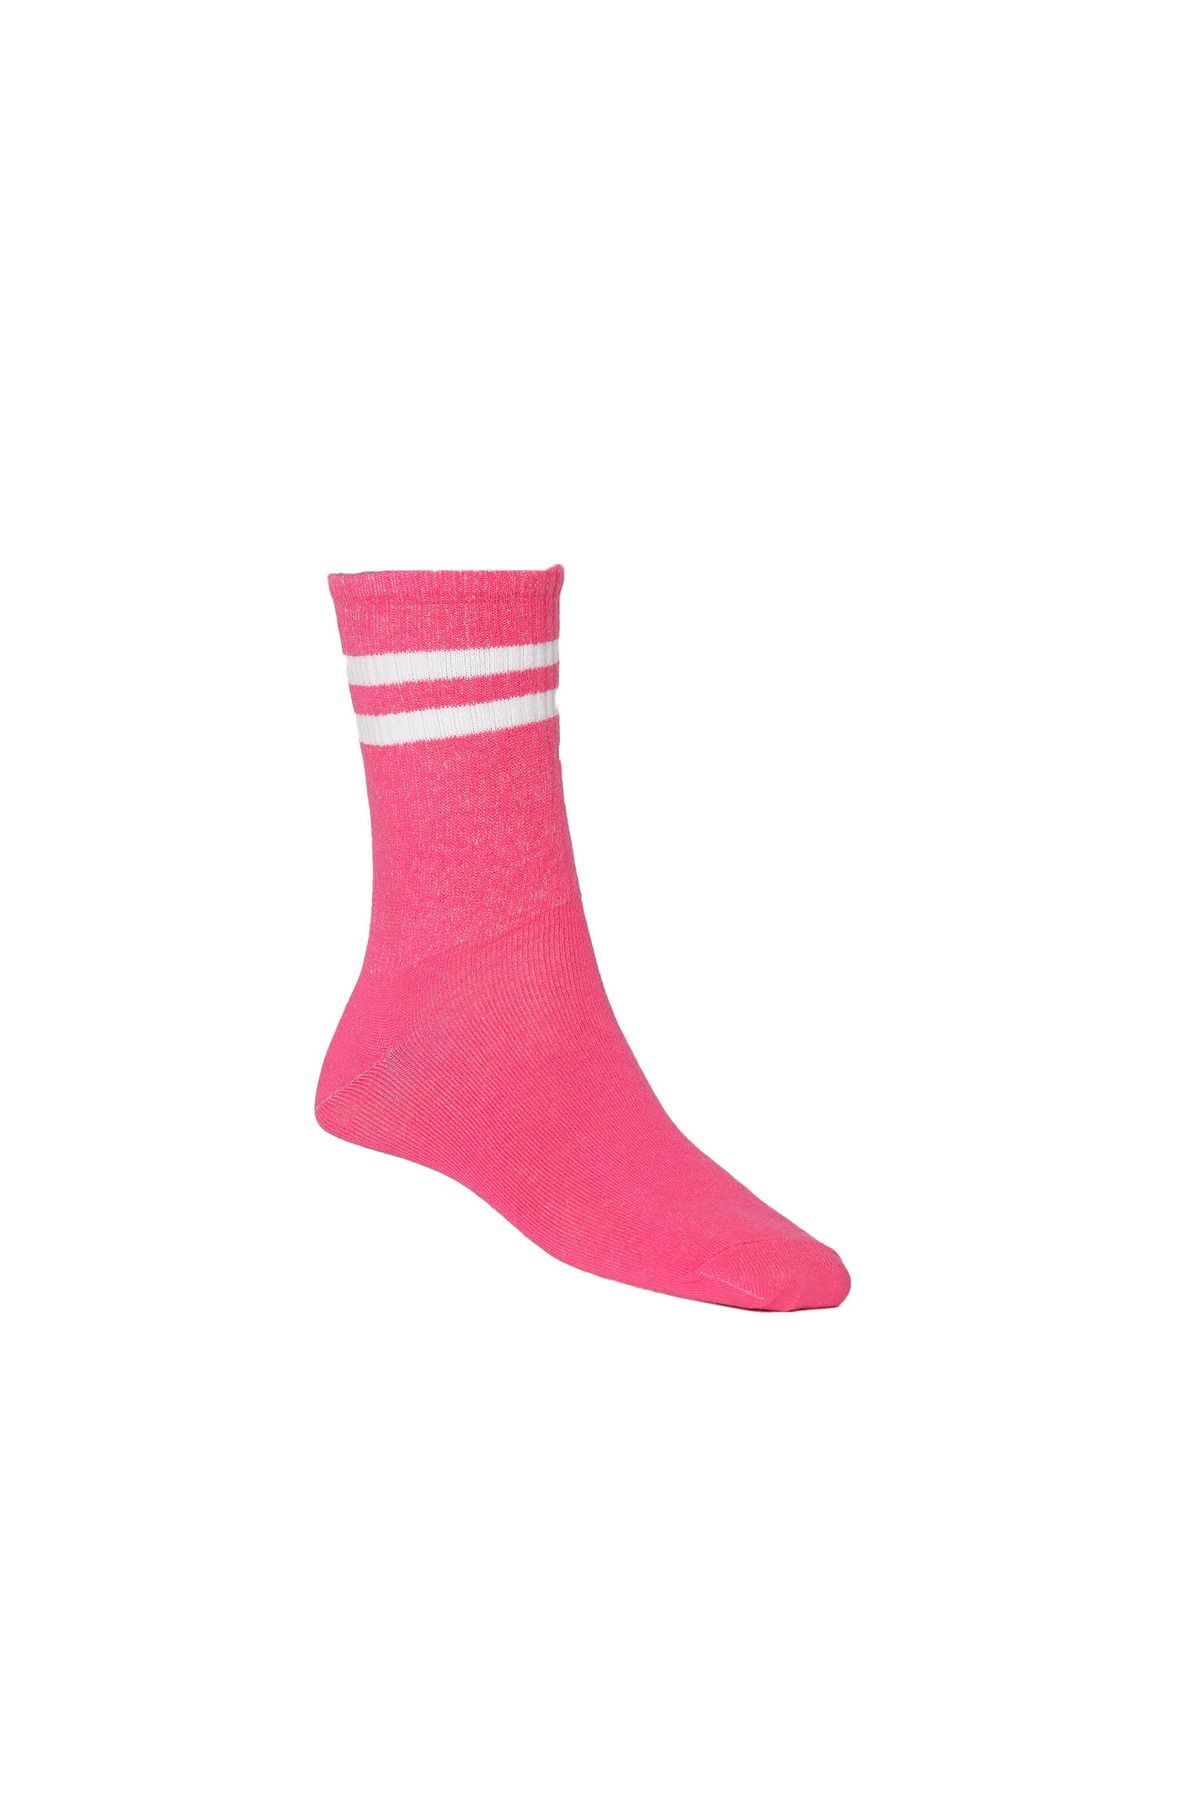 hummel Hmlbrıen Mıdı Socks Unısex Çorap 970250-9855 Fuschıa Purple